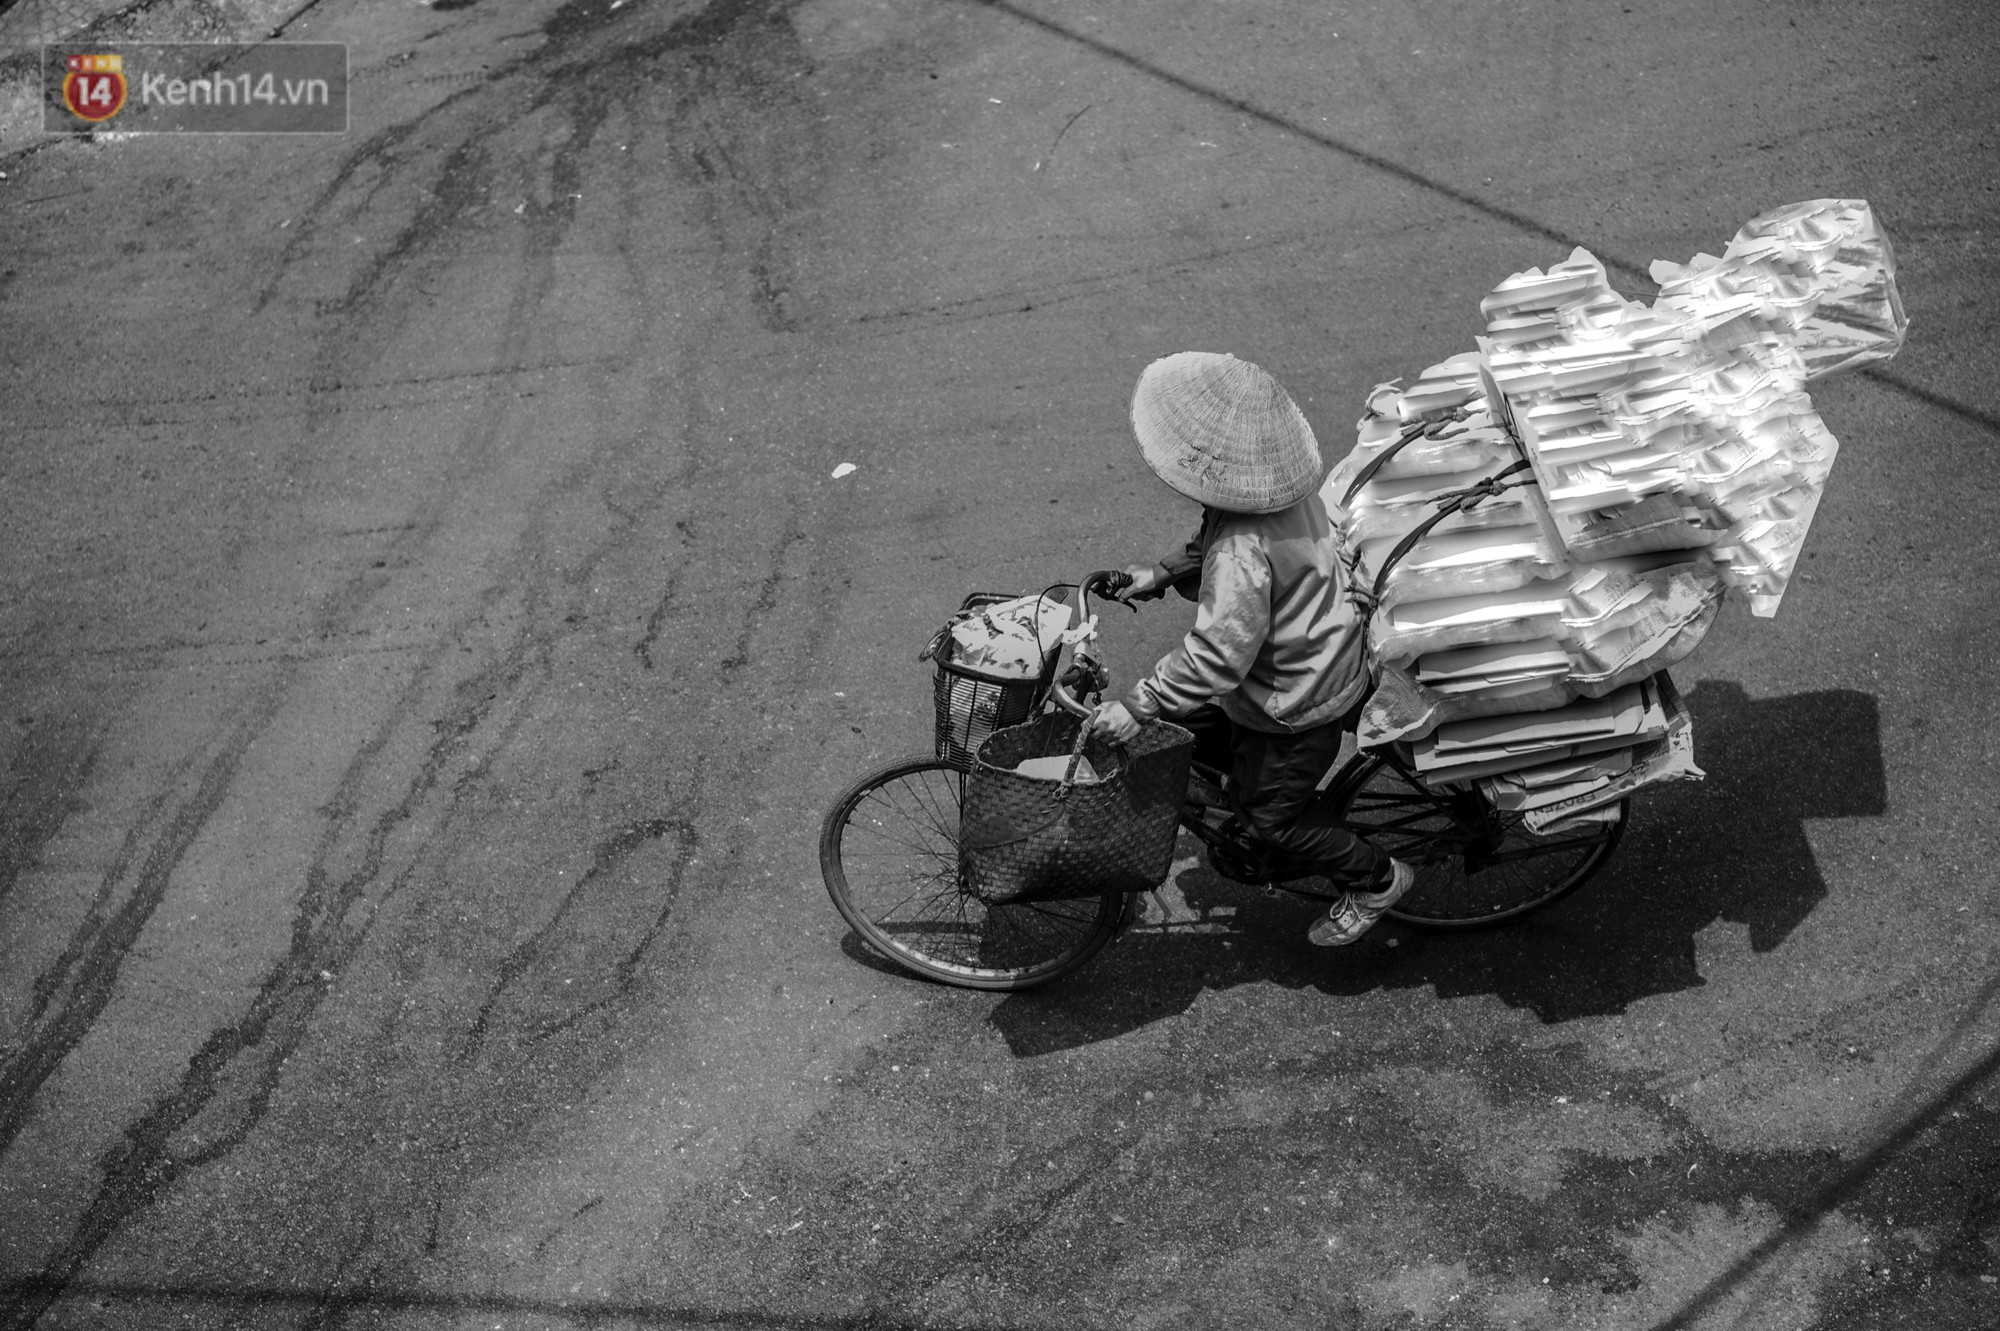 Một ngày đạp xe nhặt rác của người mẹ nghèo nuôi 3 cô con gái đỗ Đại học - Ảnh 10.